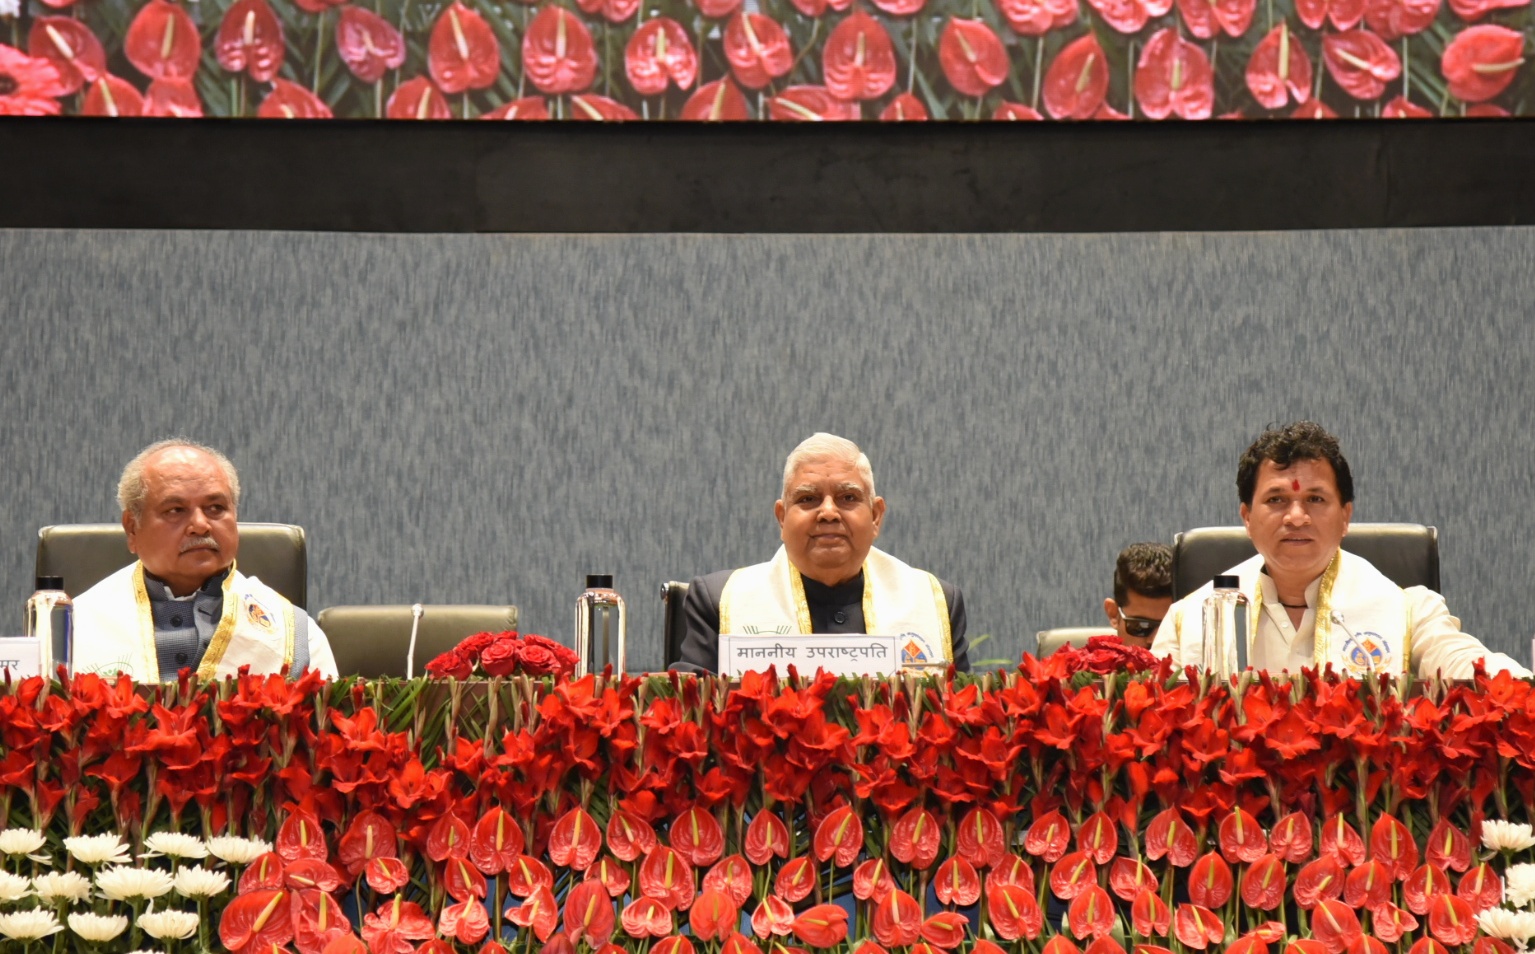 24 फरवरी 2023, नई दिल्ली, भा.कृ.अ.प- भारतीय कृषि अनुसंधान संस्थान के 61वें दीक्षांत समारोह सम्मेलन में भाग लेते हुए माननीय उपराष्ट्रपति, श्री जगदीप धनखड़ ।